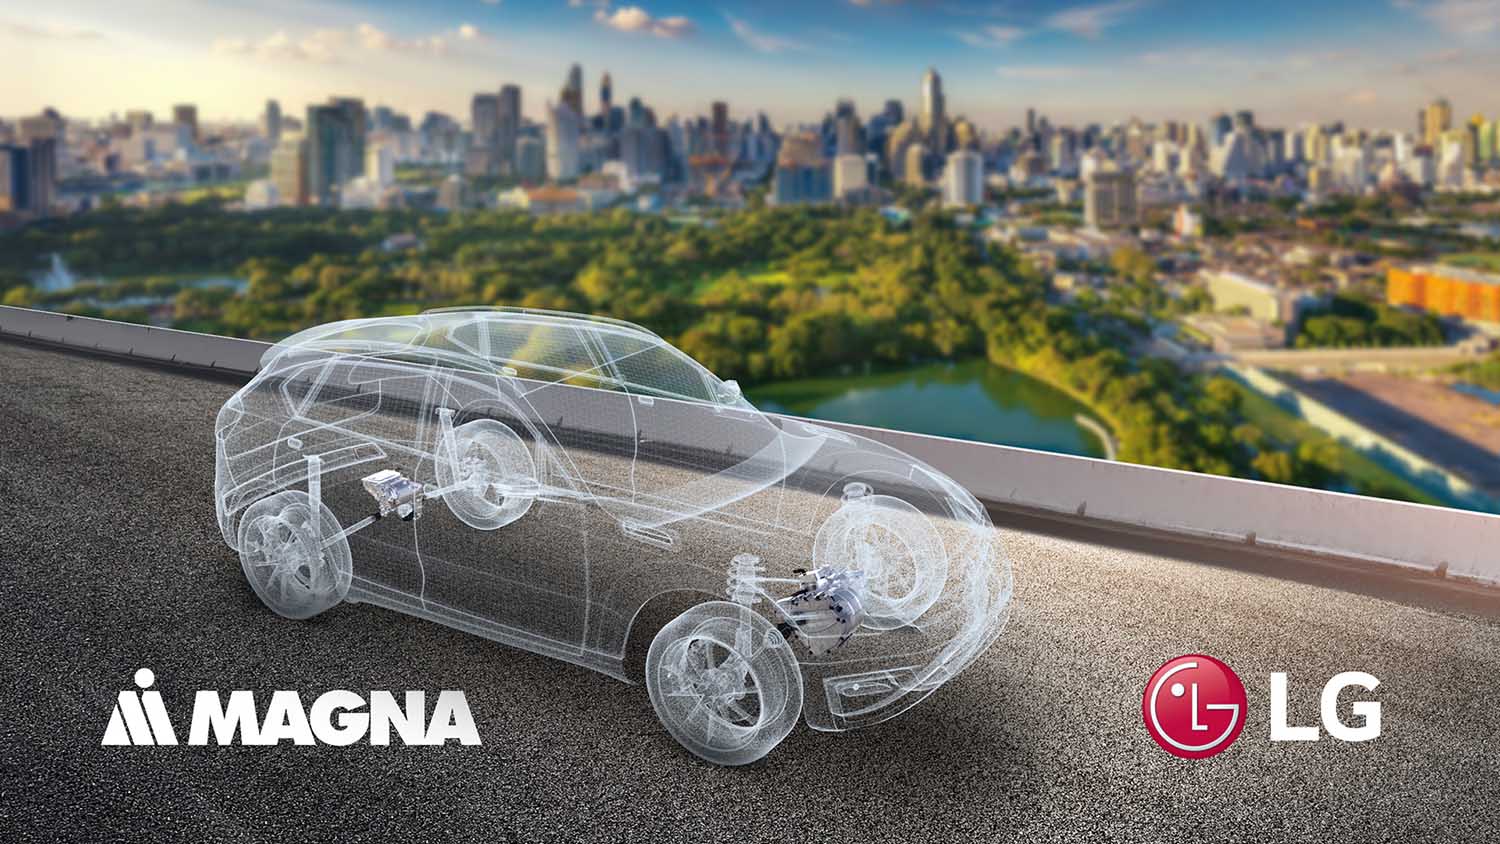 LG e Magna hanno annunciato una joint venture per espandersi nel mercato dell’elettrificazione dei veicoli